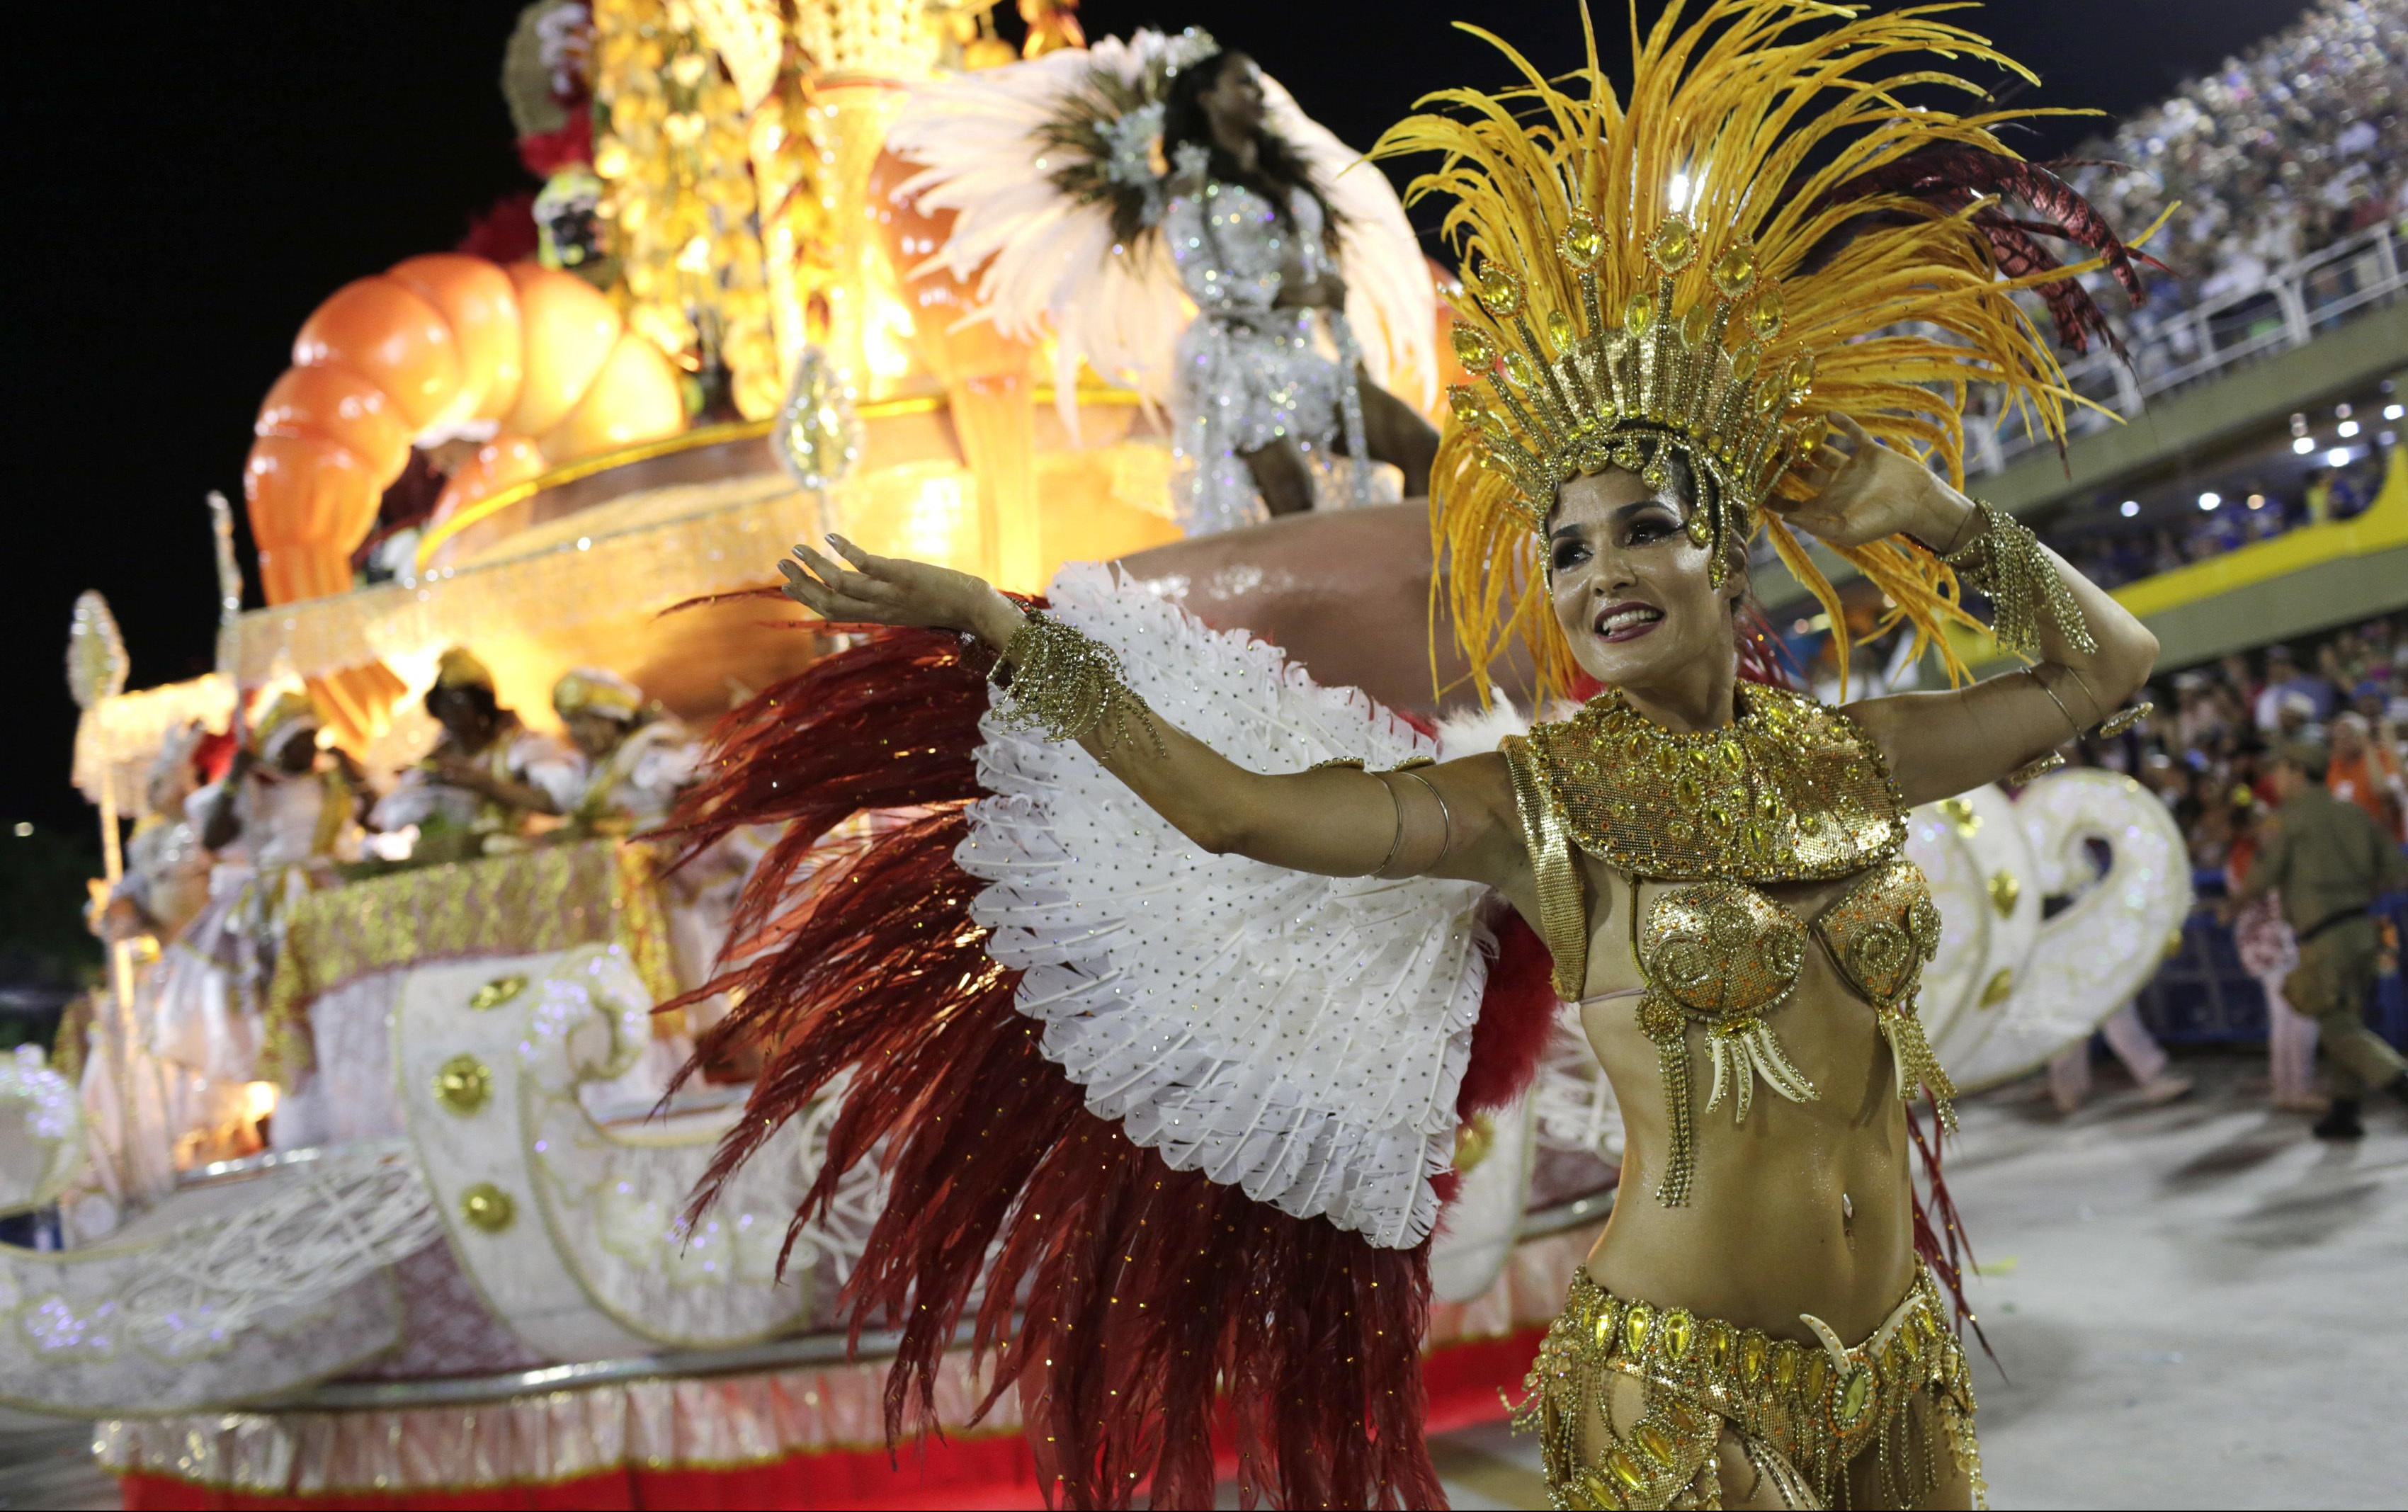 NIŠTA OD EGZOTIČNIH PLESAČICA! Čuveni karneval u Riju otkazan zbog pandemije korone!